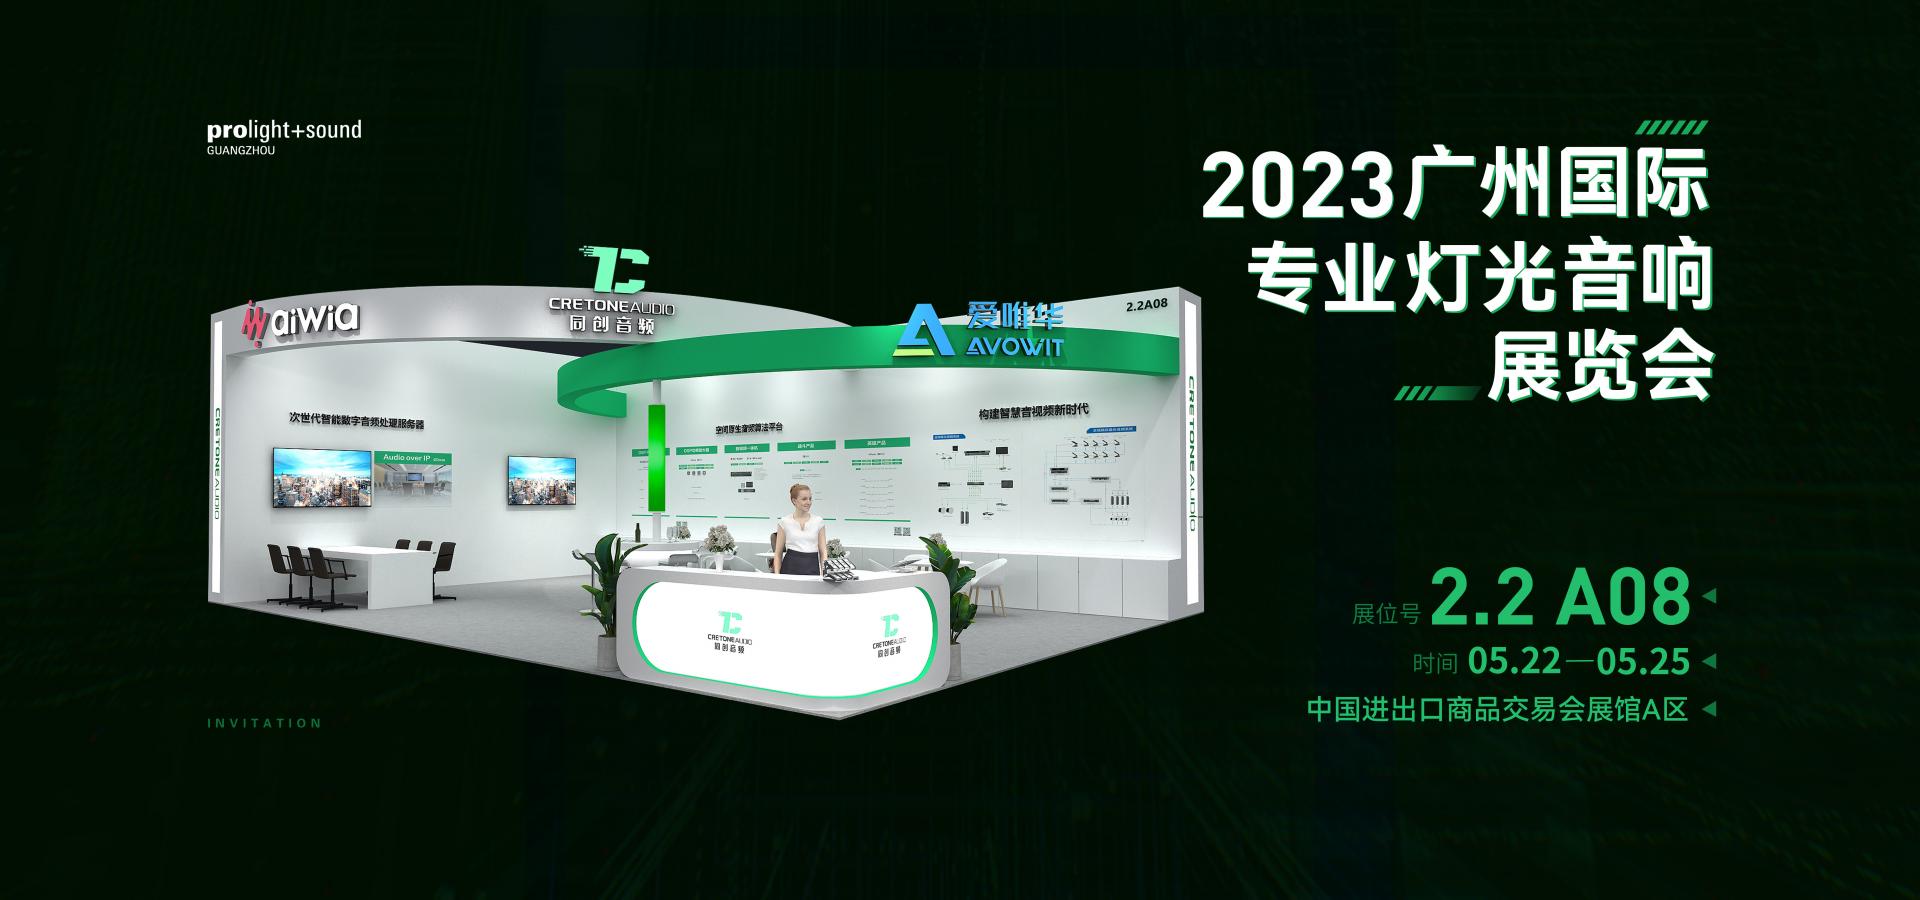 2023广州国际专业、灯光音响展览会预告